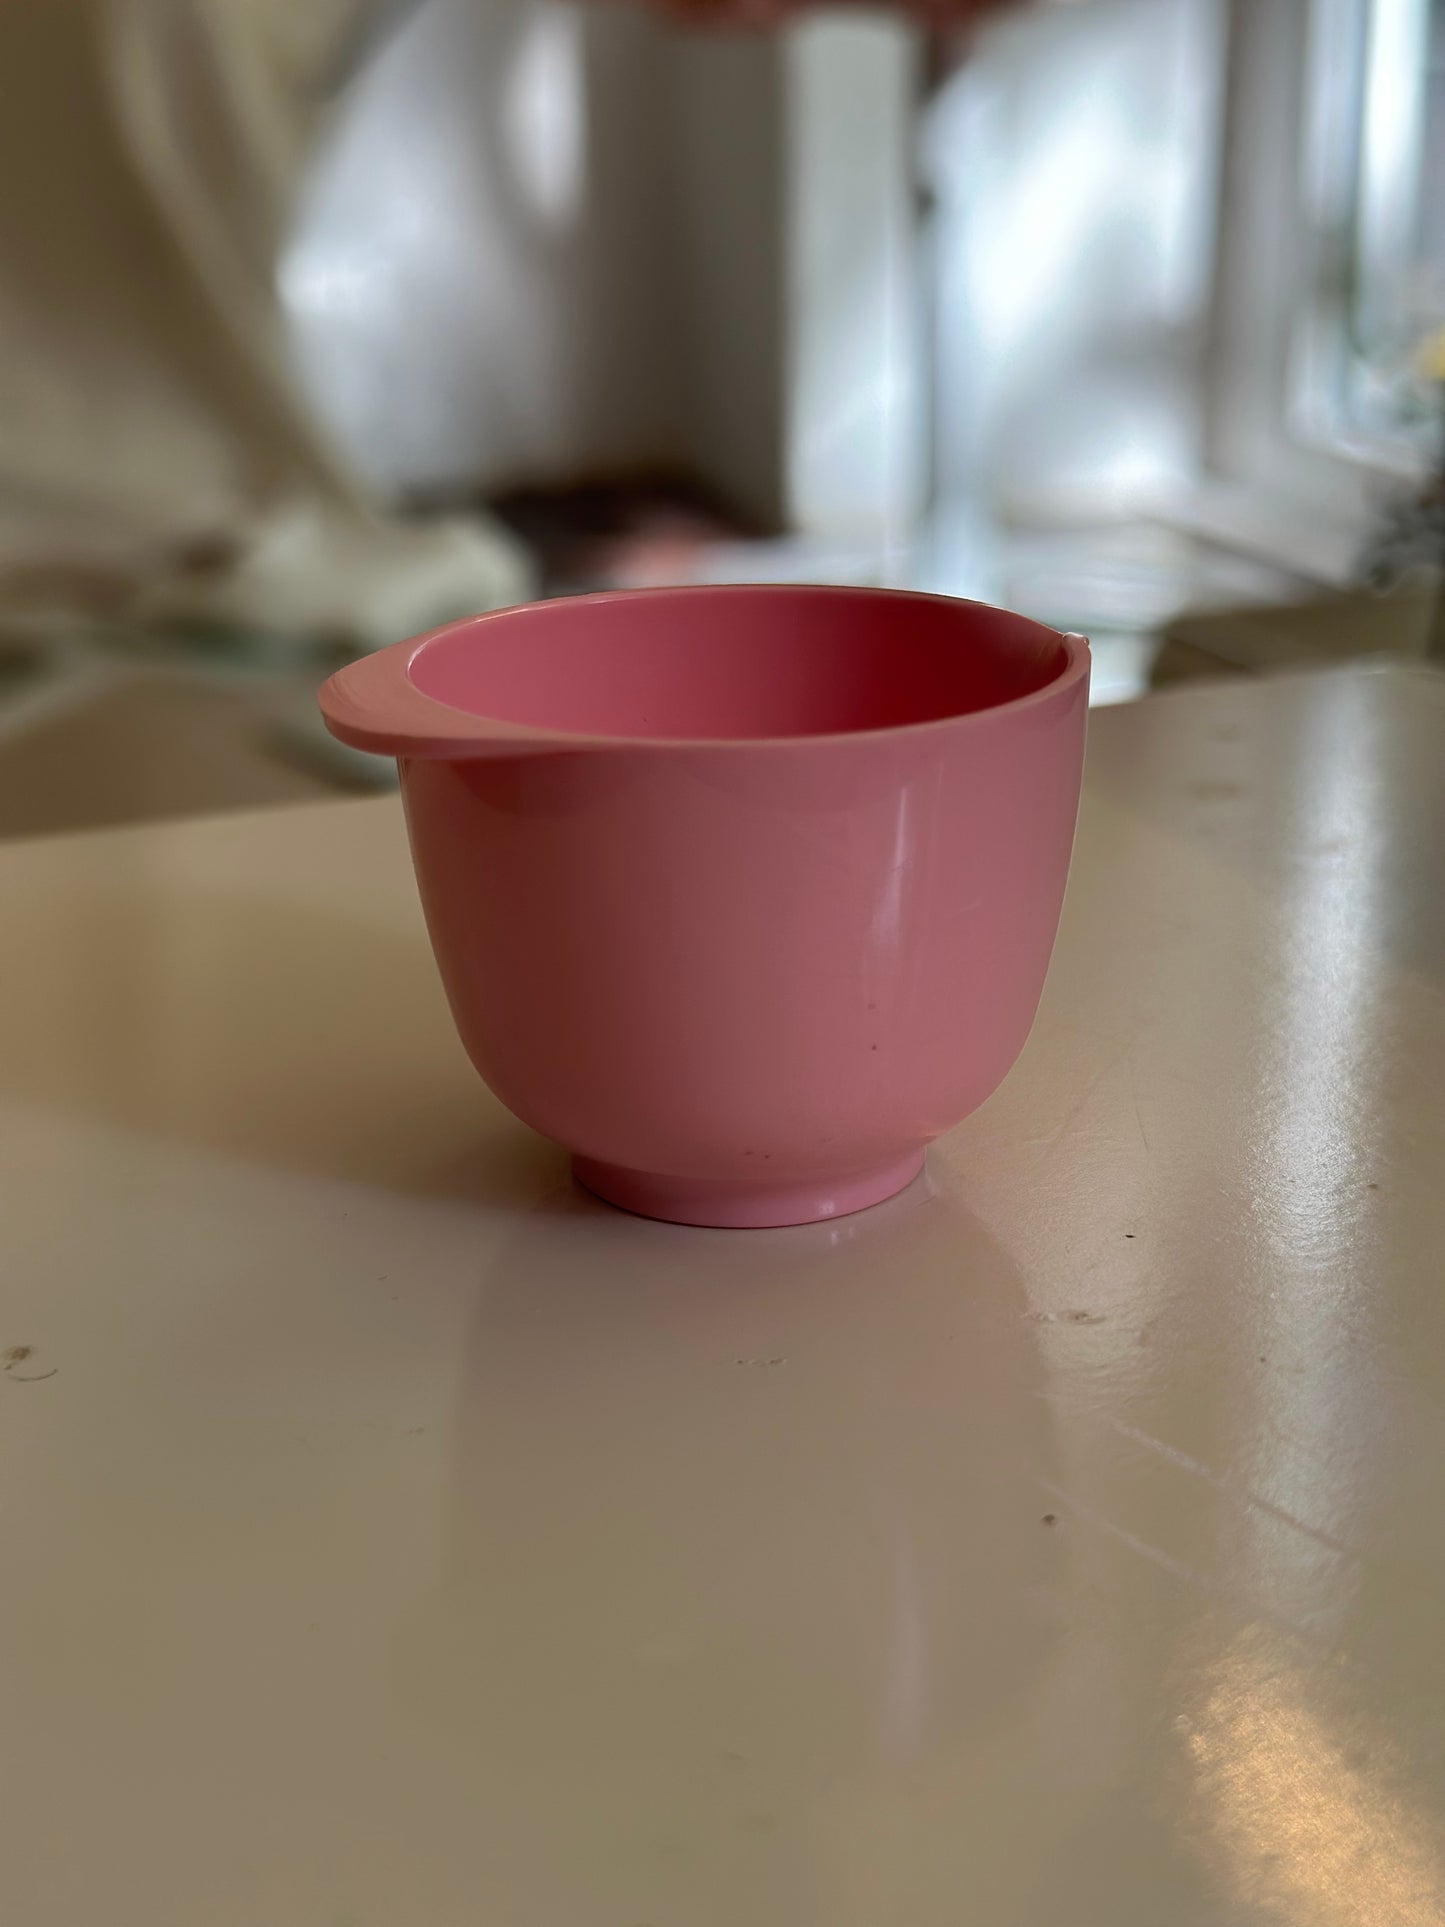 Miniatur mixing bowl